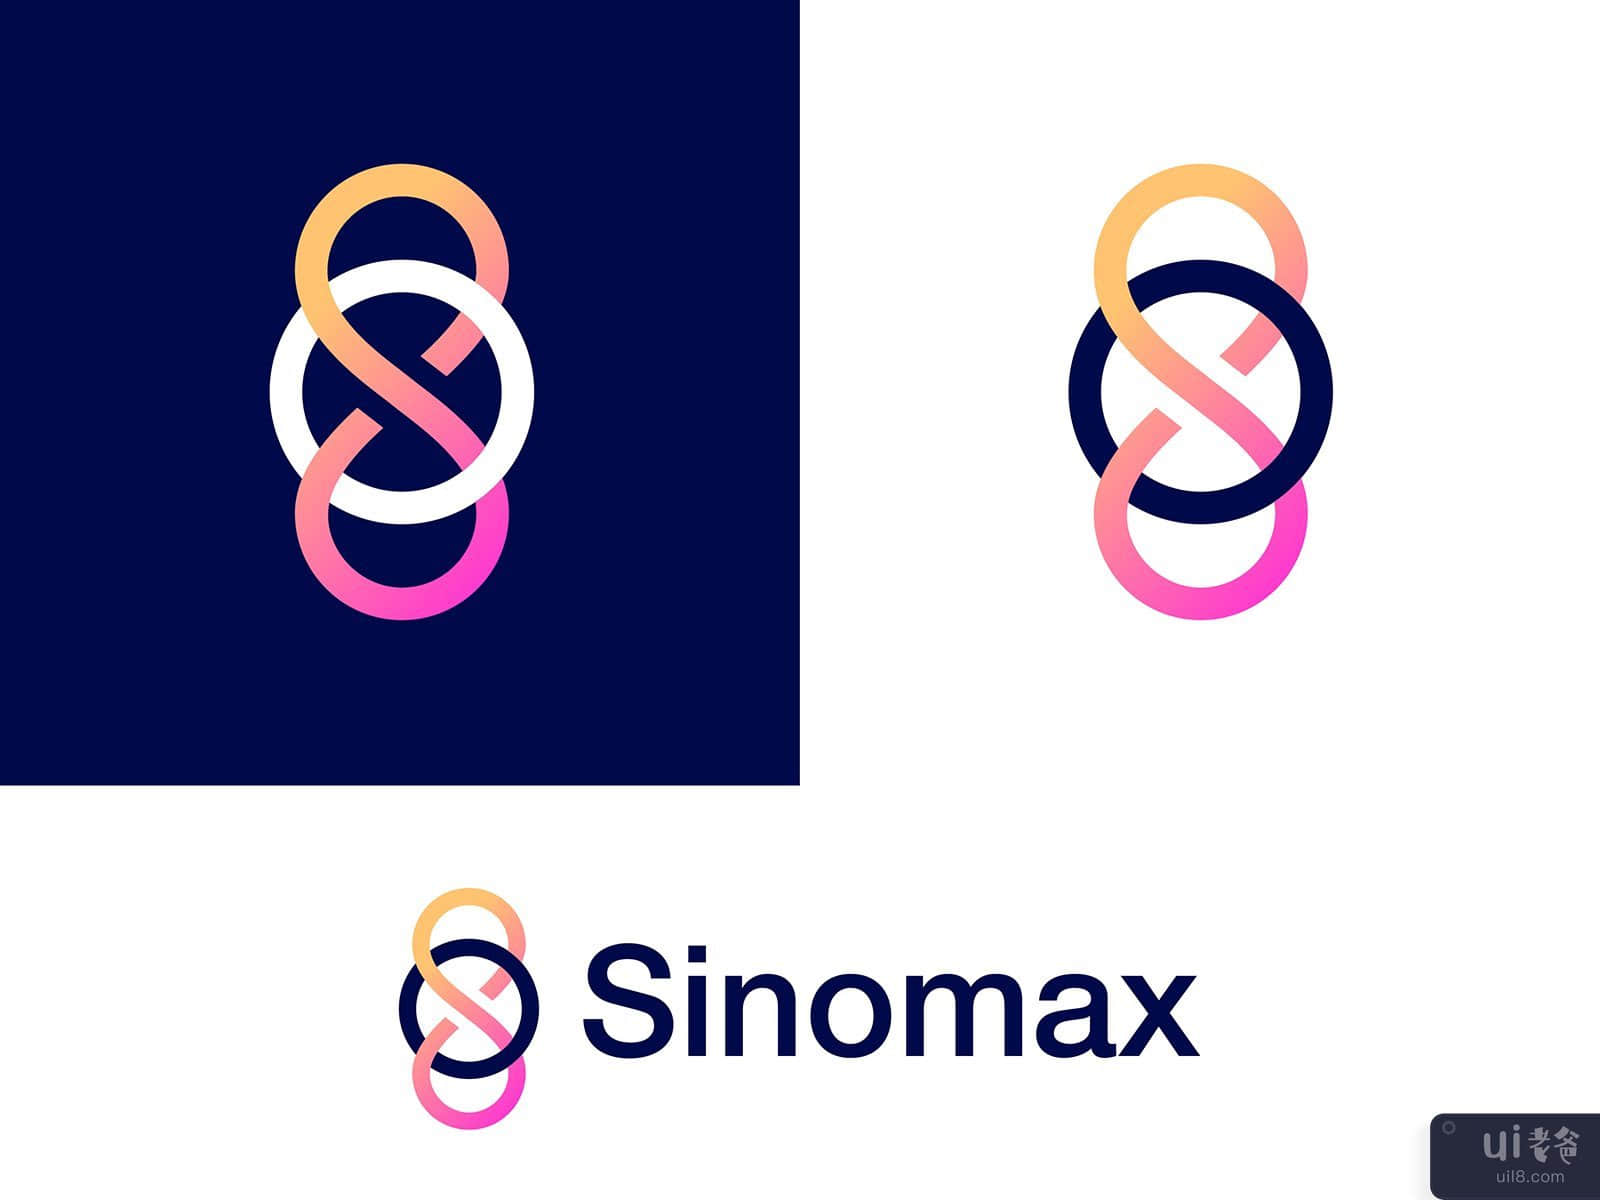 S & O letter logo concept for Sinomax